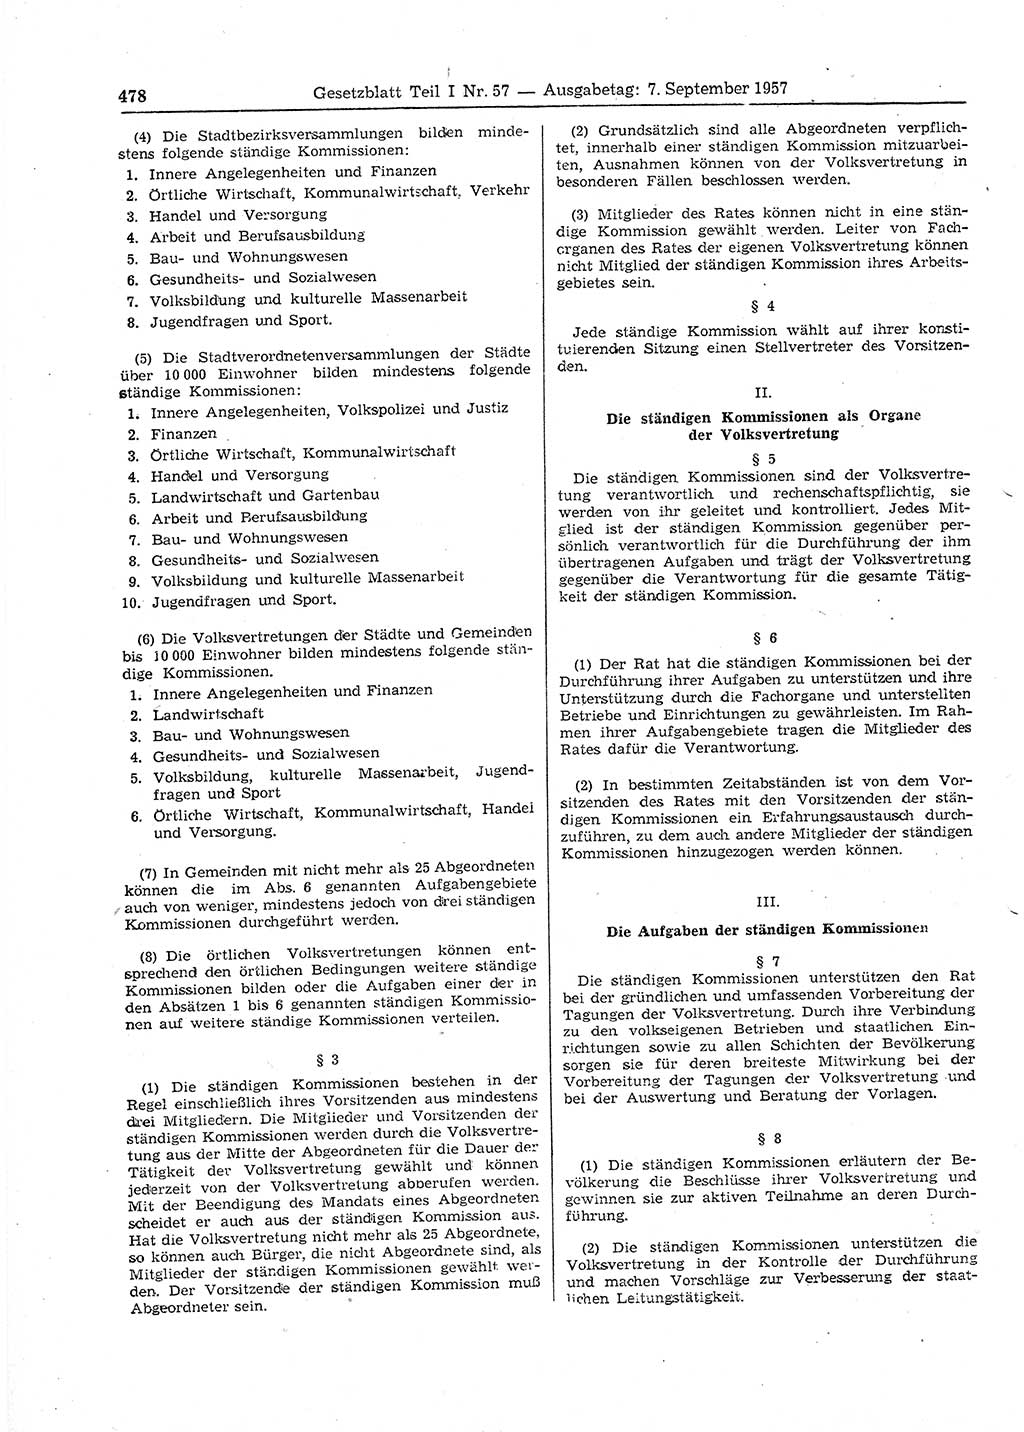 Gesetzblatt (GBl.) der Deutschen Demokratischen Republik (DDR) Teil Ⅰ 1957, Seite 478 (GBl. DDR Ⅰ 1957, S. 478)